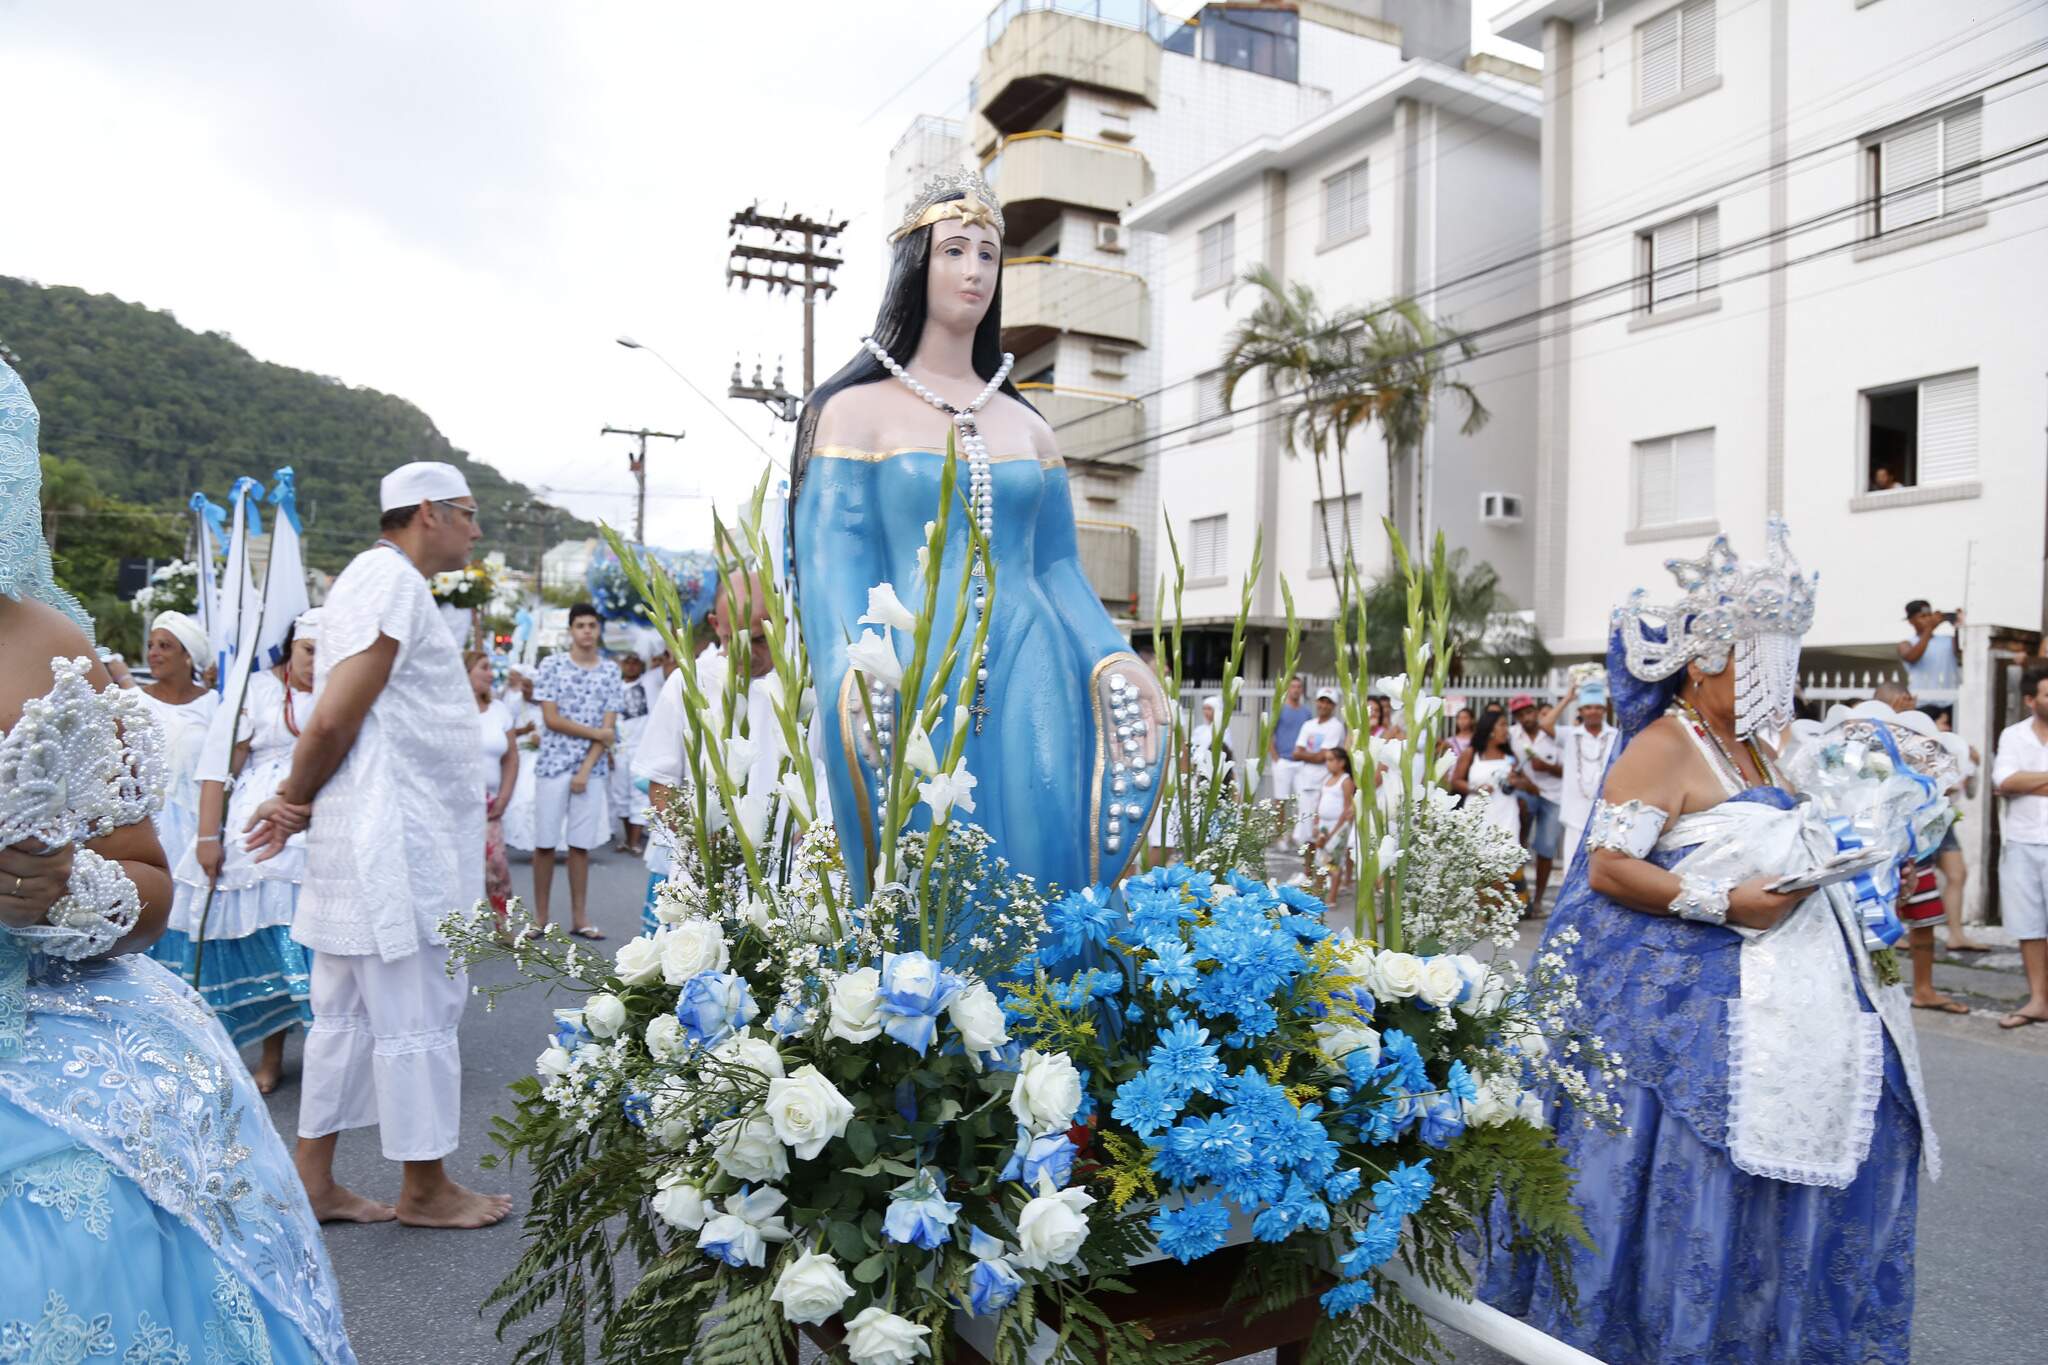 Cidades da região, como Guarujá, também realizaram a procissão em comemoração à Festa de Iemanjá